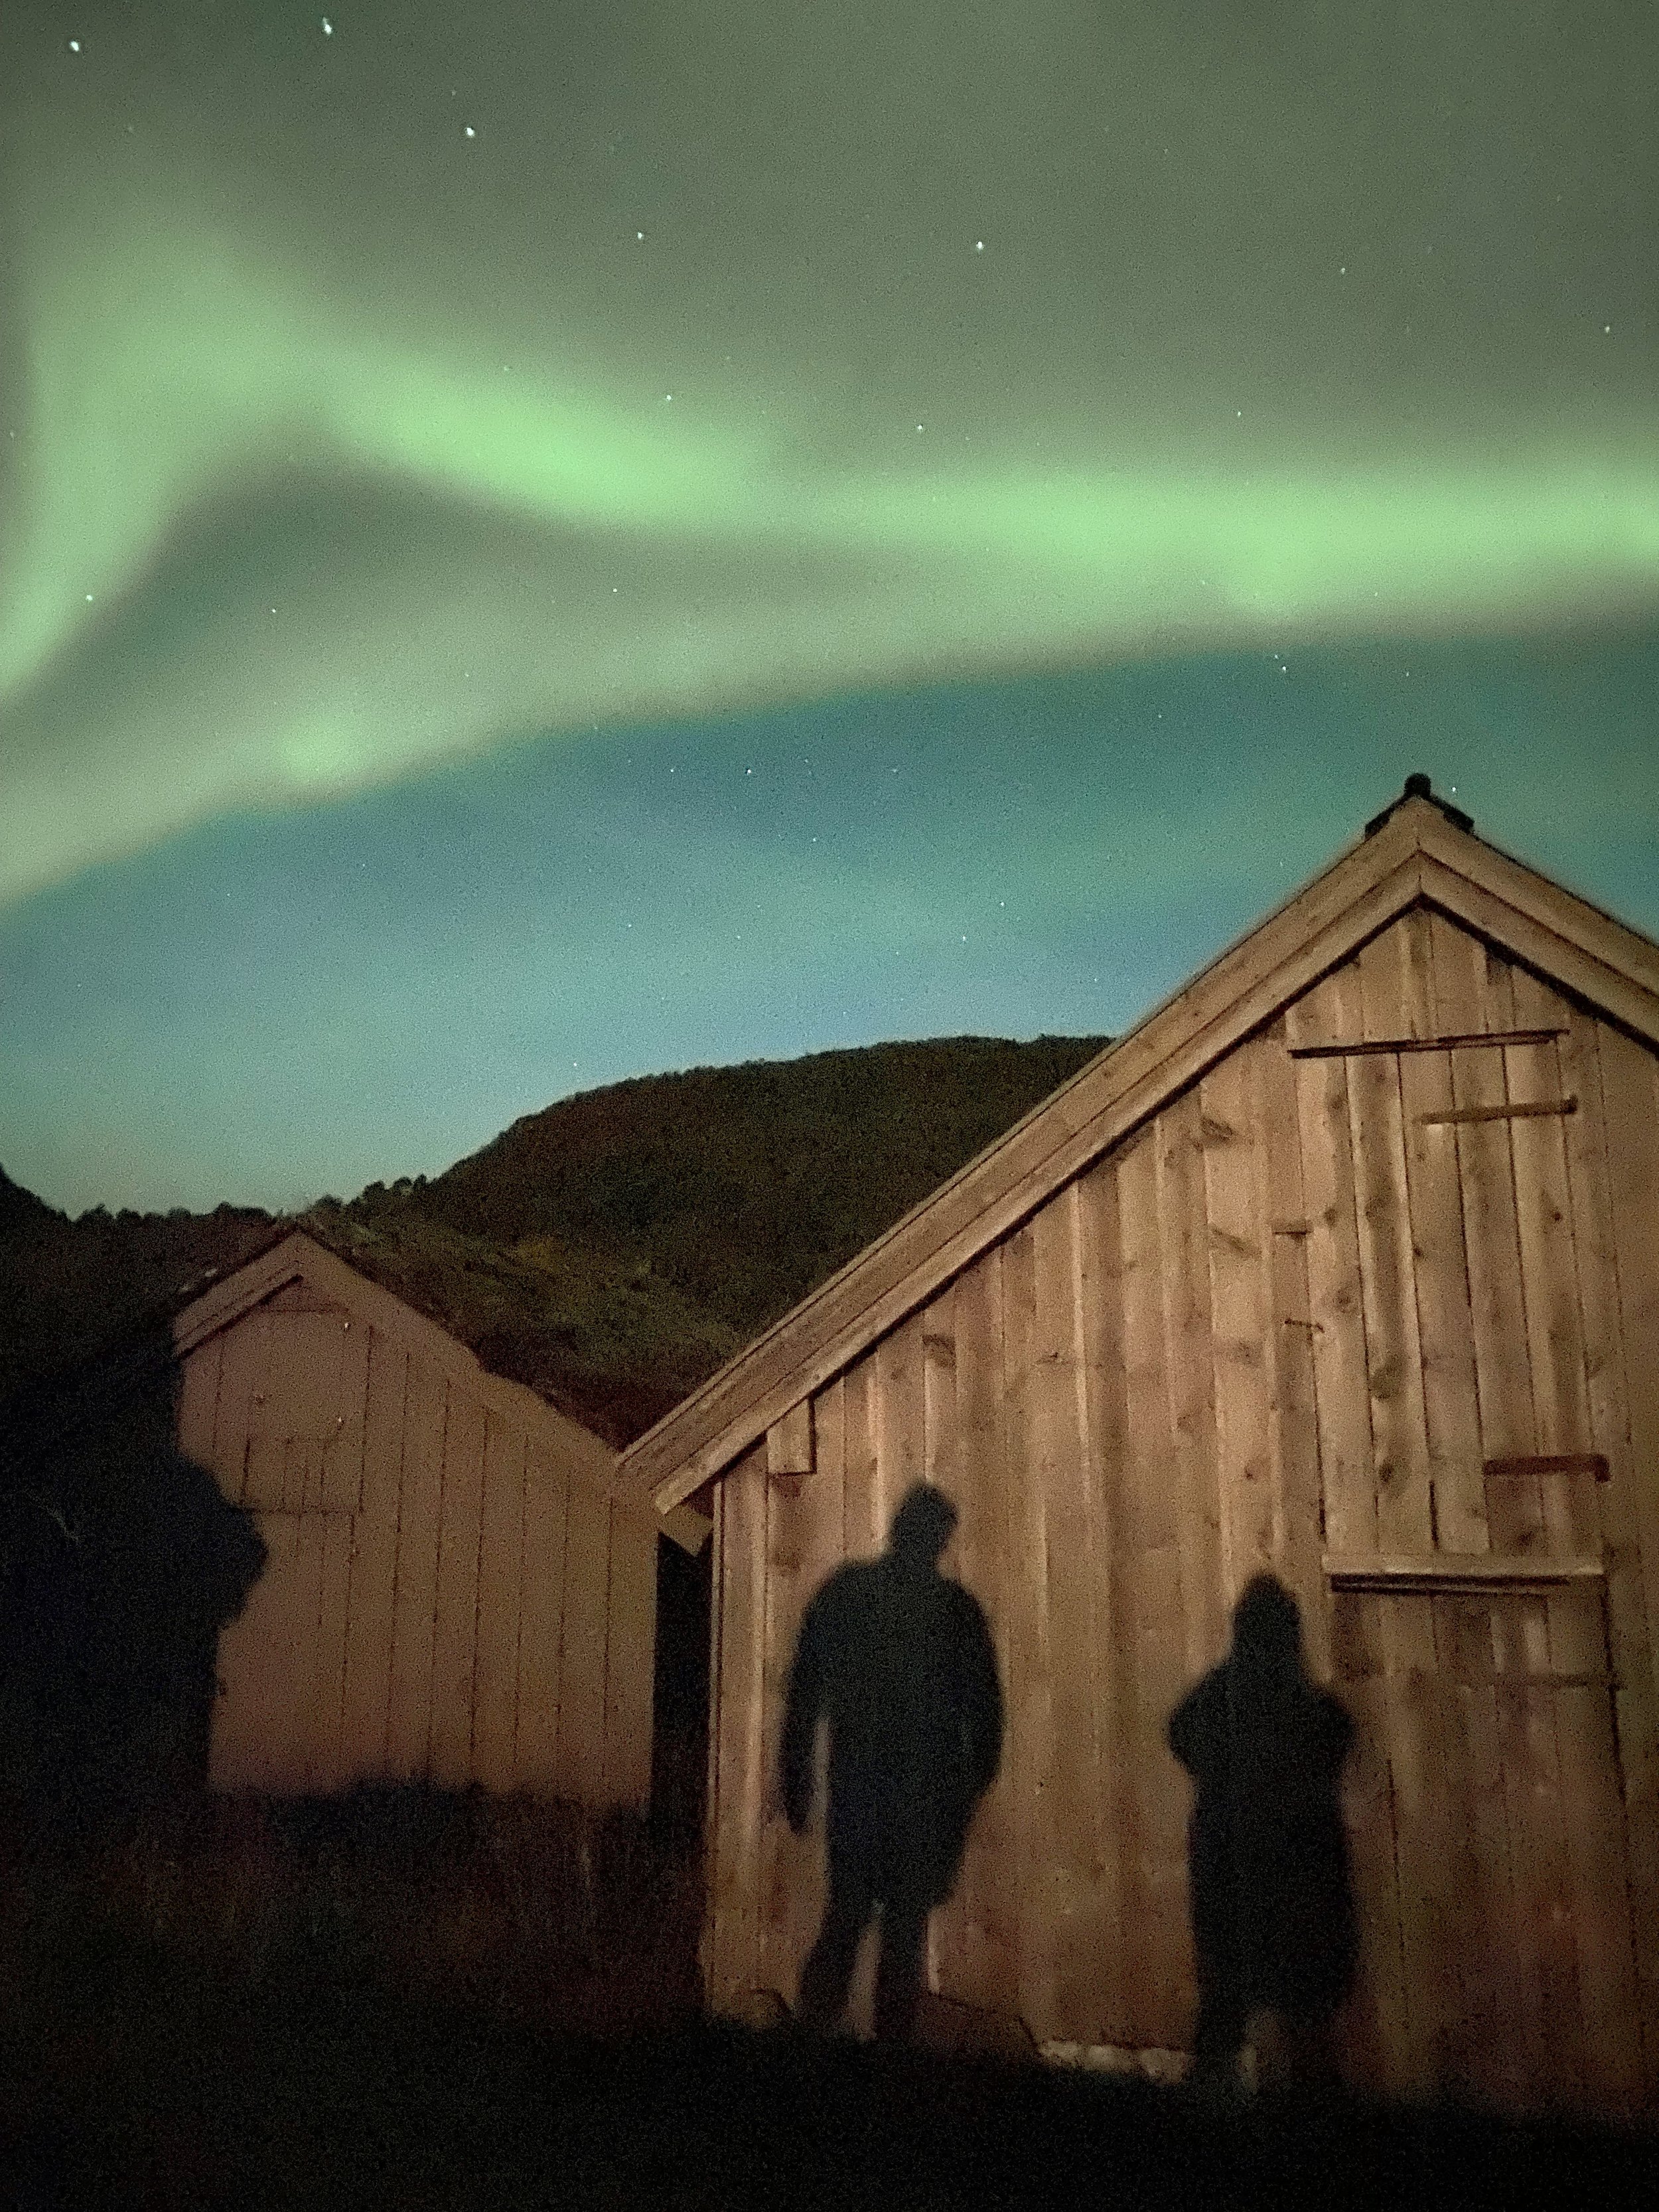 noorwegen noorderlicht zien.jpg